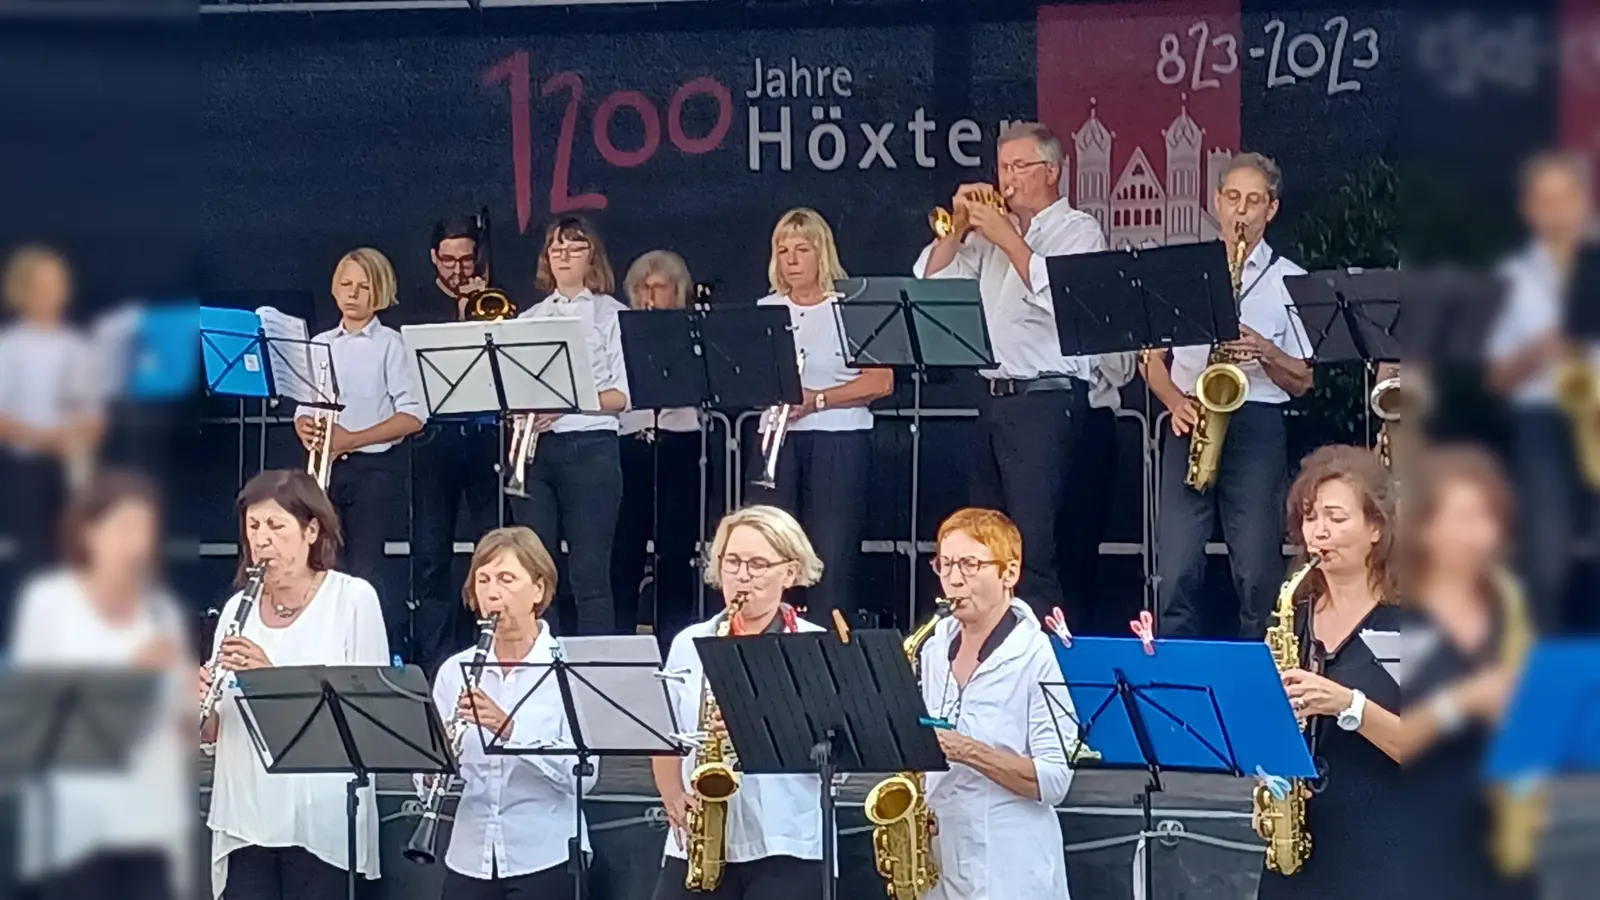 Die Musikschule Höxter sorgt mit verschiedenen Ensembles für ein gemeinsames Musikerlebnis. Im Bild: Das sinfonische Blasorchester beim Festakt zum 1200-jährigen Bestehend der Stadt Höxter. (Foto: Stadt Höxter)